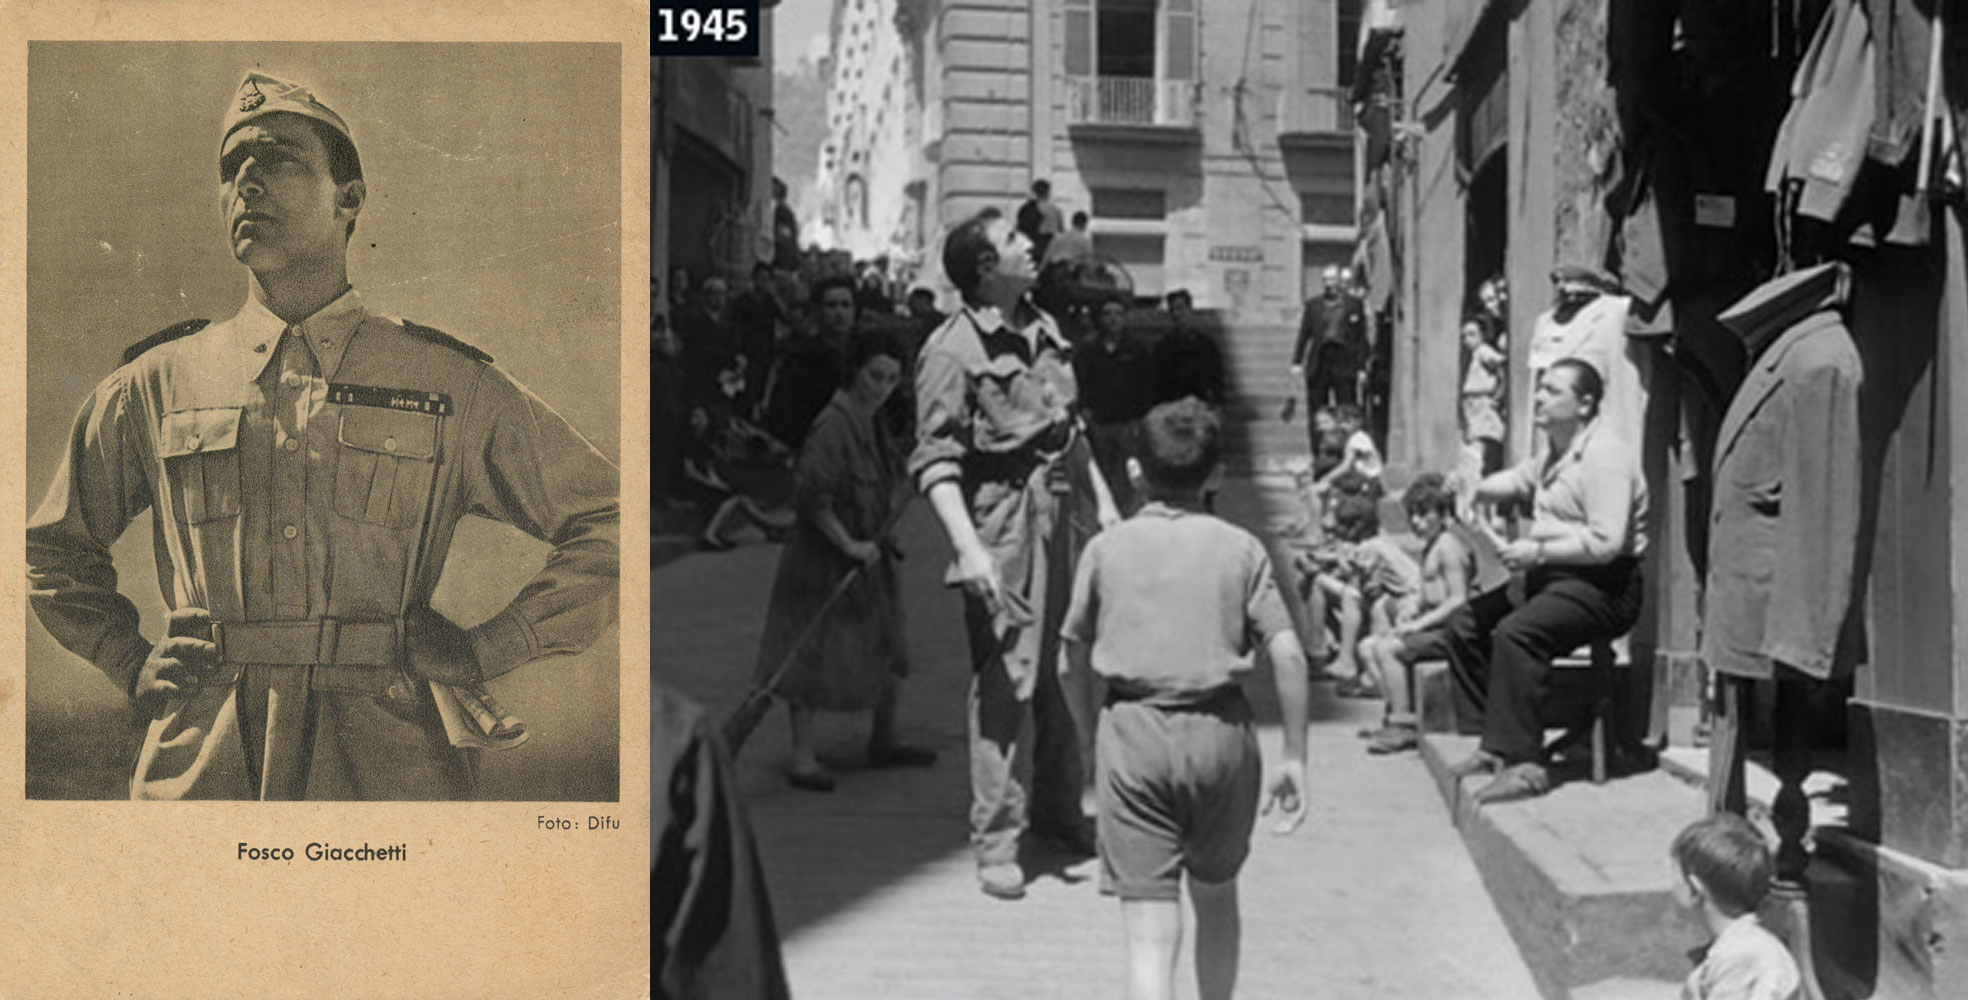 Figg. 6 e 7. Fosco Giachetti, da militare fascista in “Bengasi” (A. Genina, 1942) a reduce disorientato in “La vita ricomincia” (M. Mattoli, 1945). Riconfigurare la narrazione.